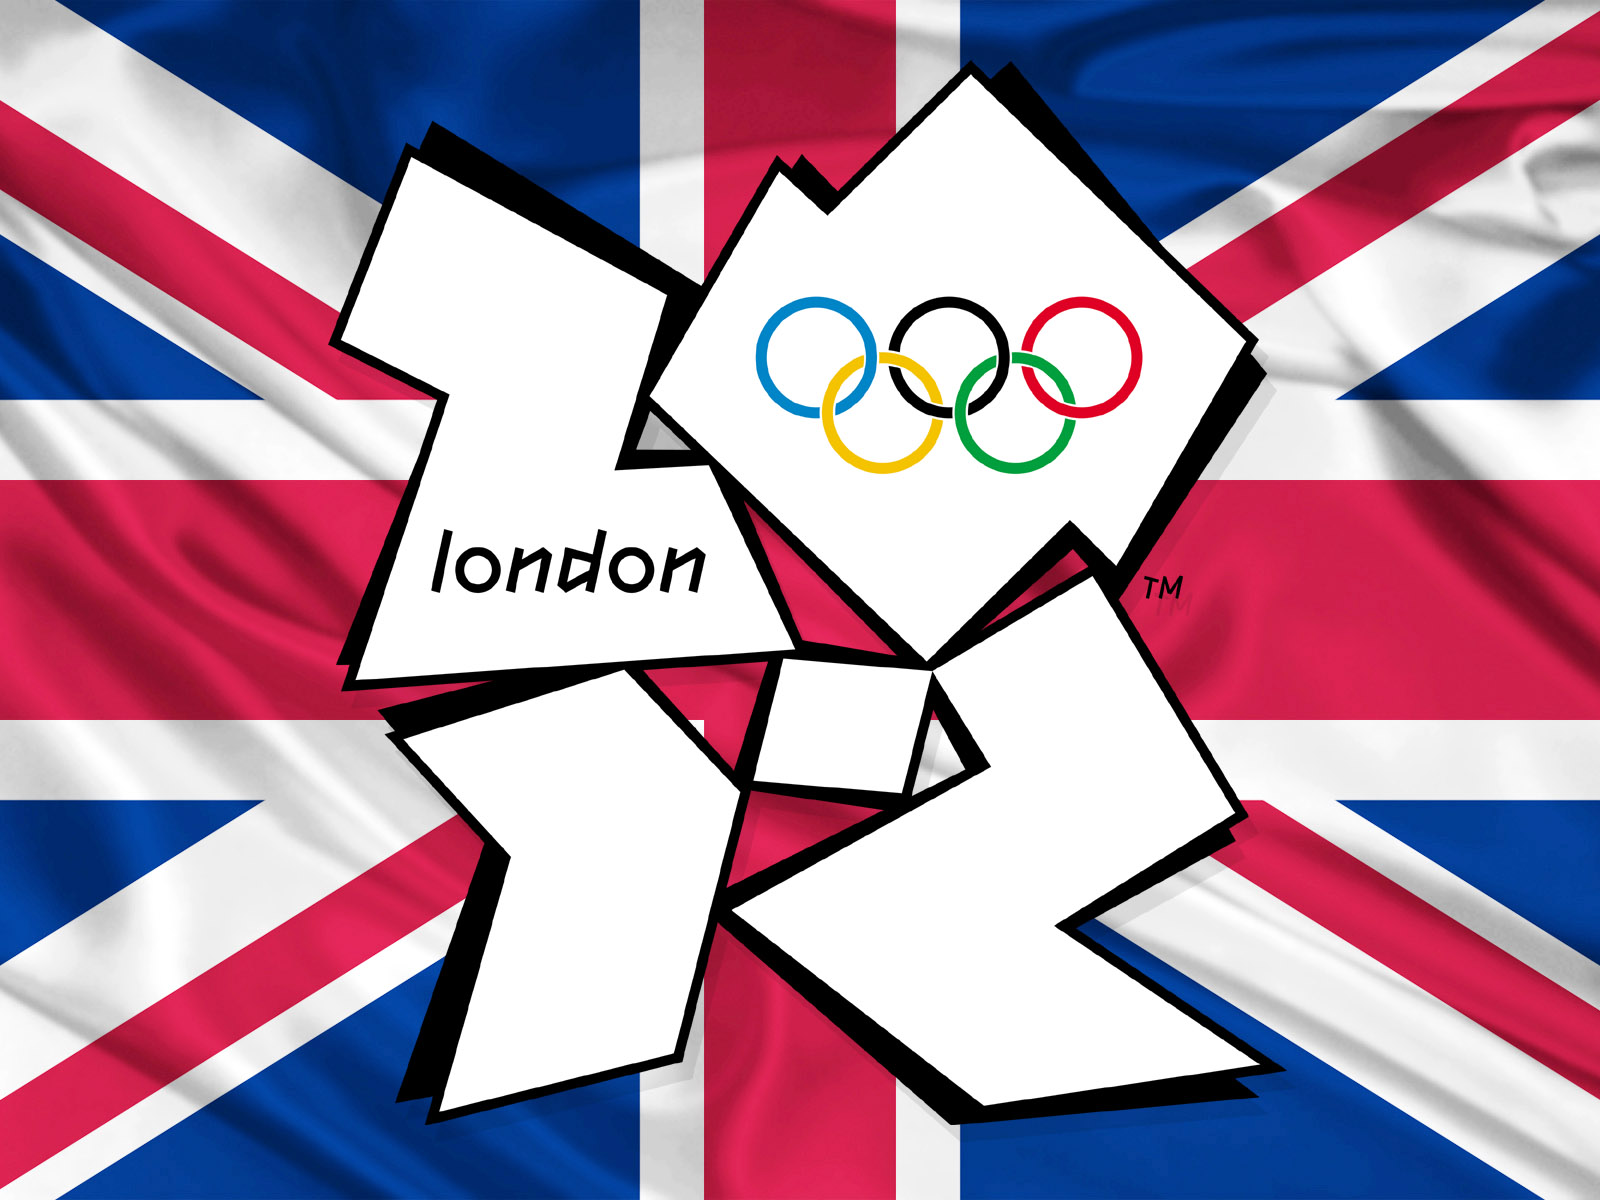 Ои 2012. Олимпийские игры в Лондоне 2012. Олимпийские игры в Великобритании 2012. Летние Олимпийские игры 2012 года в Лондоне. Олимпийские игры 2012 Лондон лого.